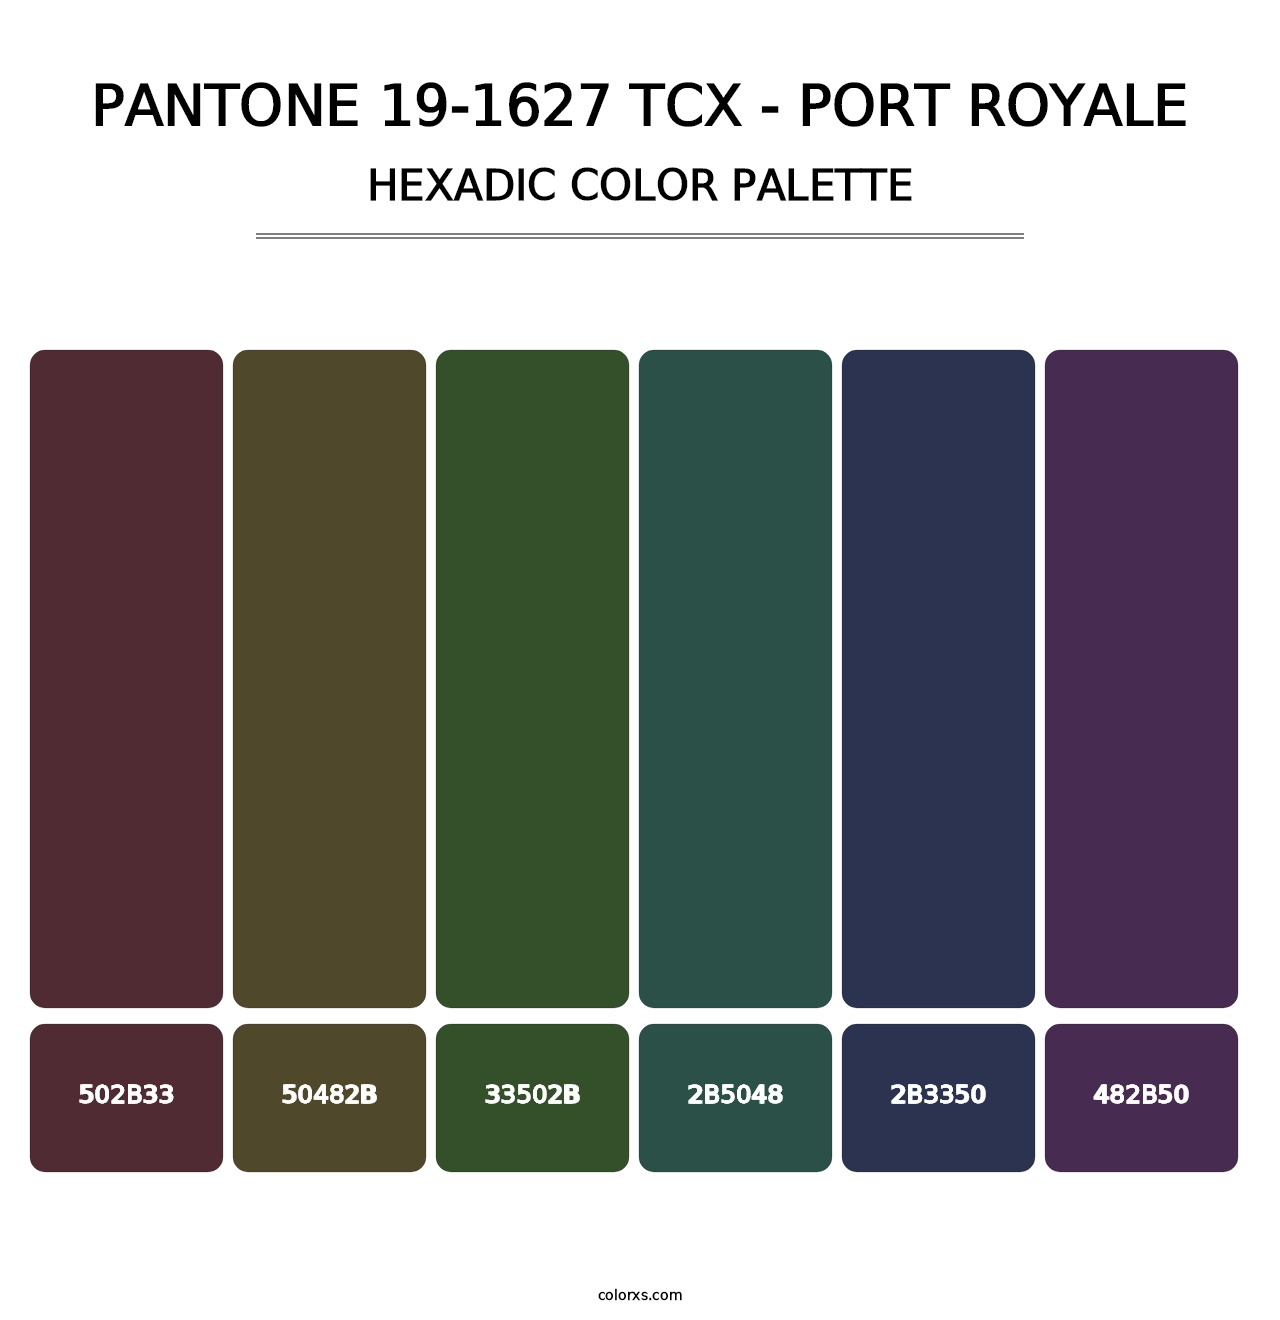 PANTONE 19-1627 TCX - Port Royale - Hexadic Color Palette